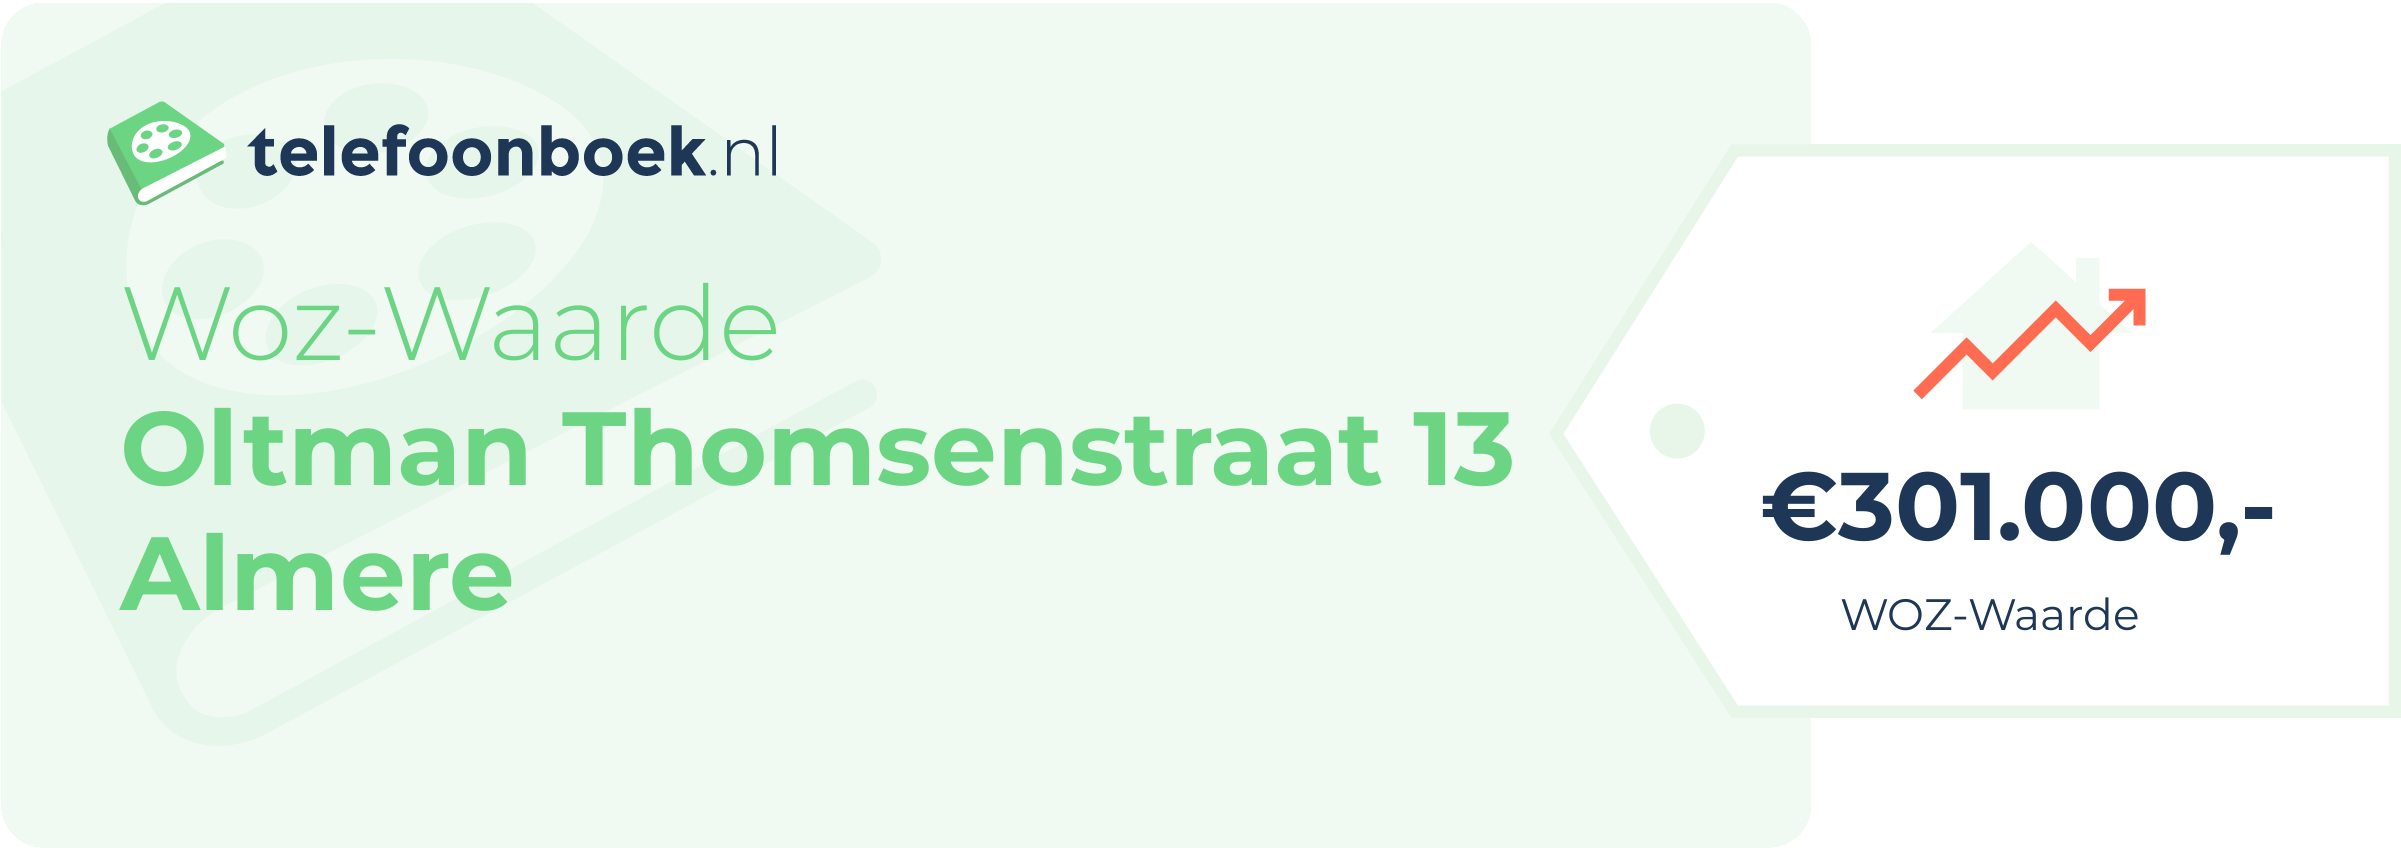 WOZ-waarde Oltman Thomsenstraat 13 Almere